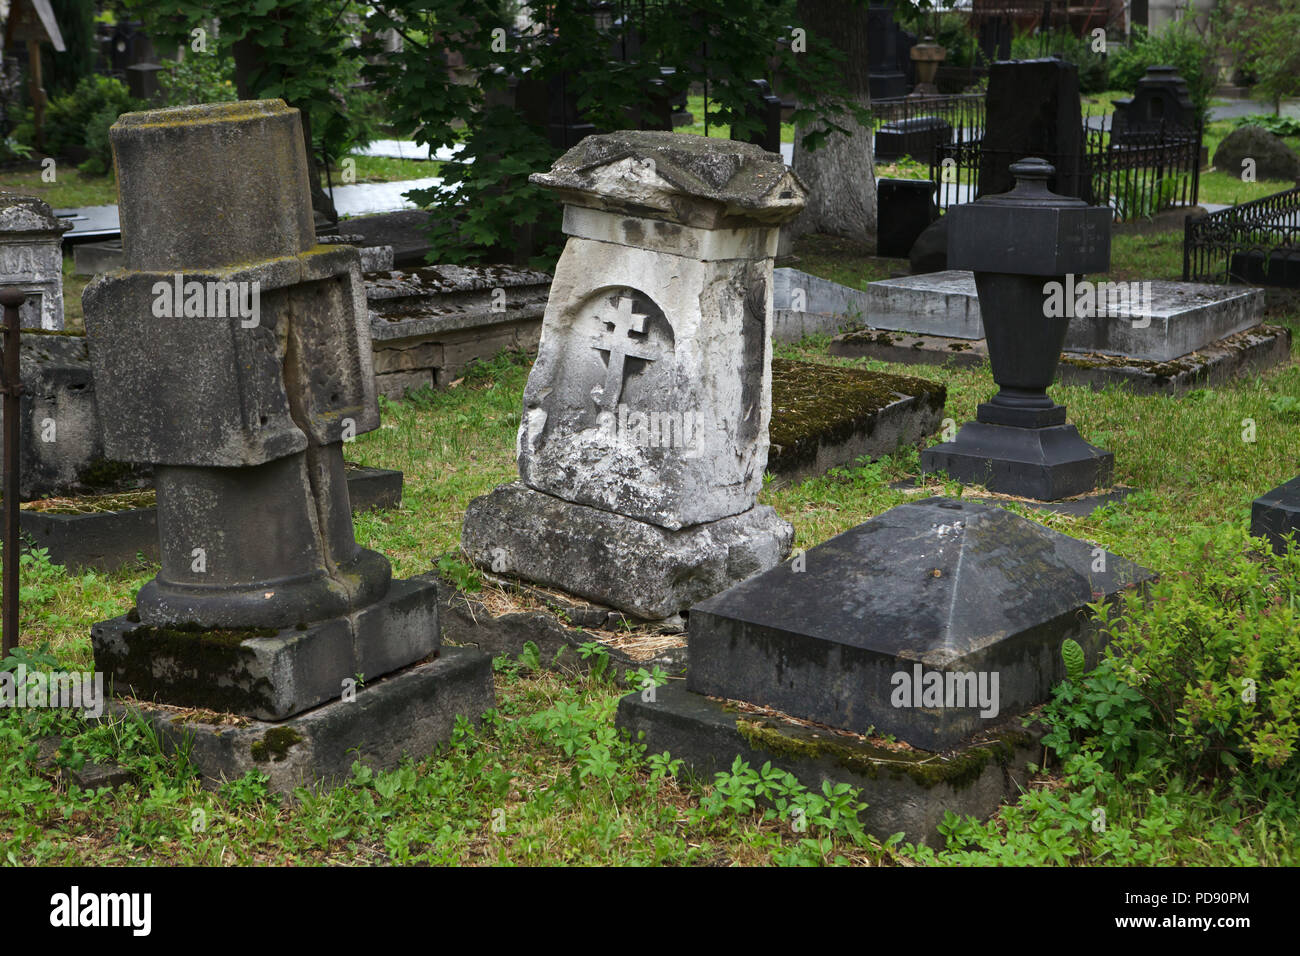 Abbandonate le tombe nel cimitero del monastero di Donskoy di Mosca, Russia. Foto Stock